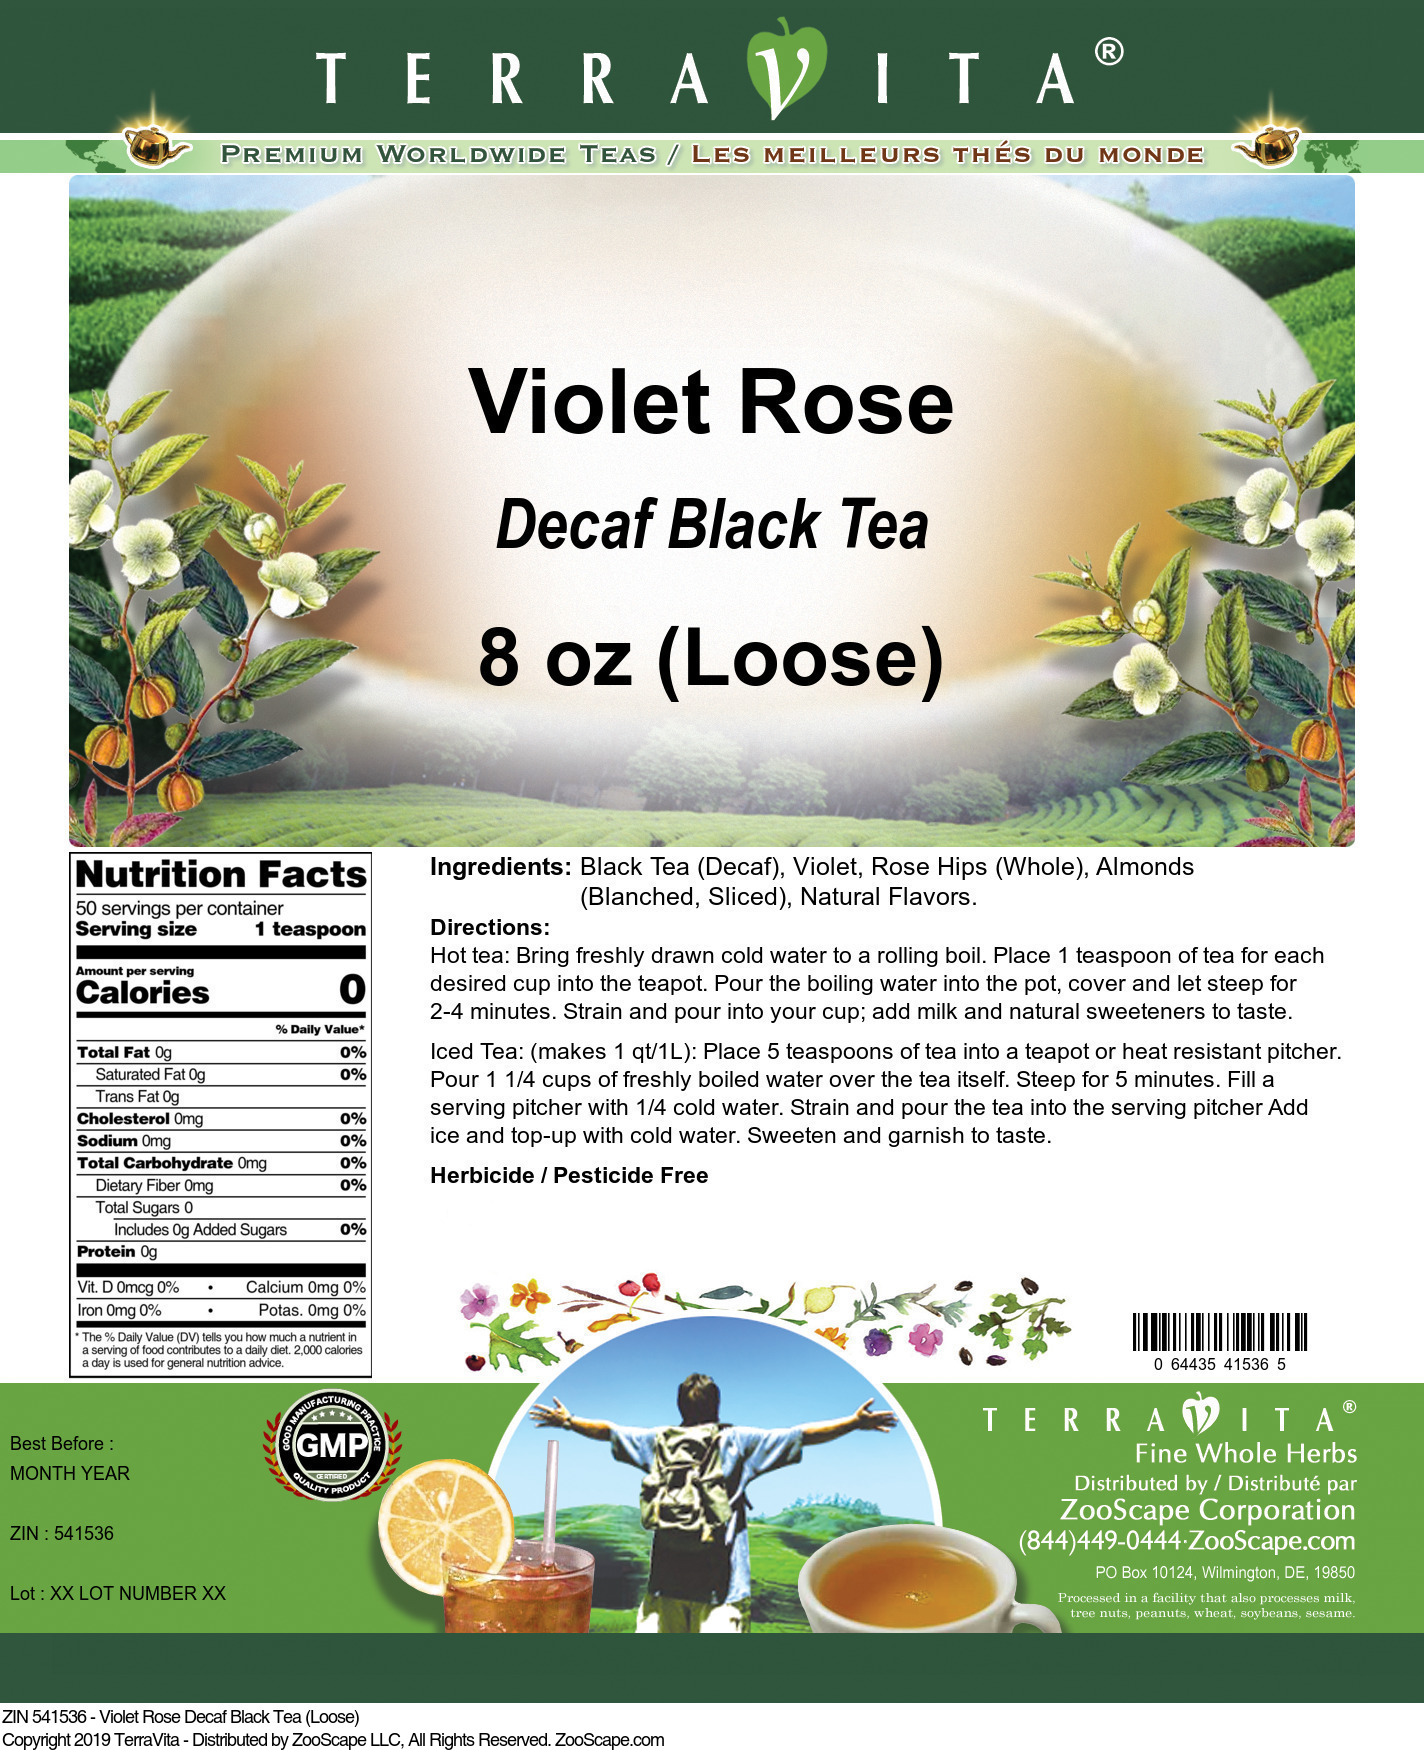 Violet Rose Decaf Black Tea (Loose) - Label